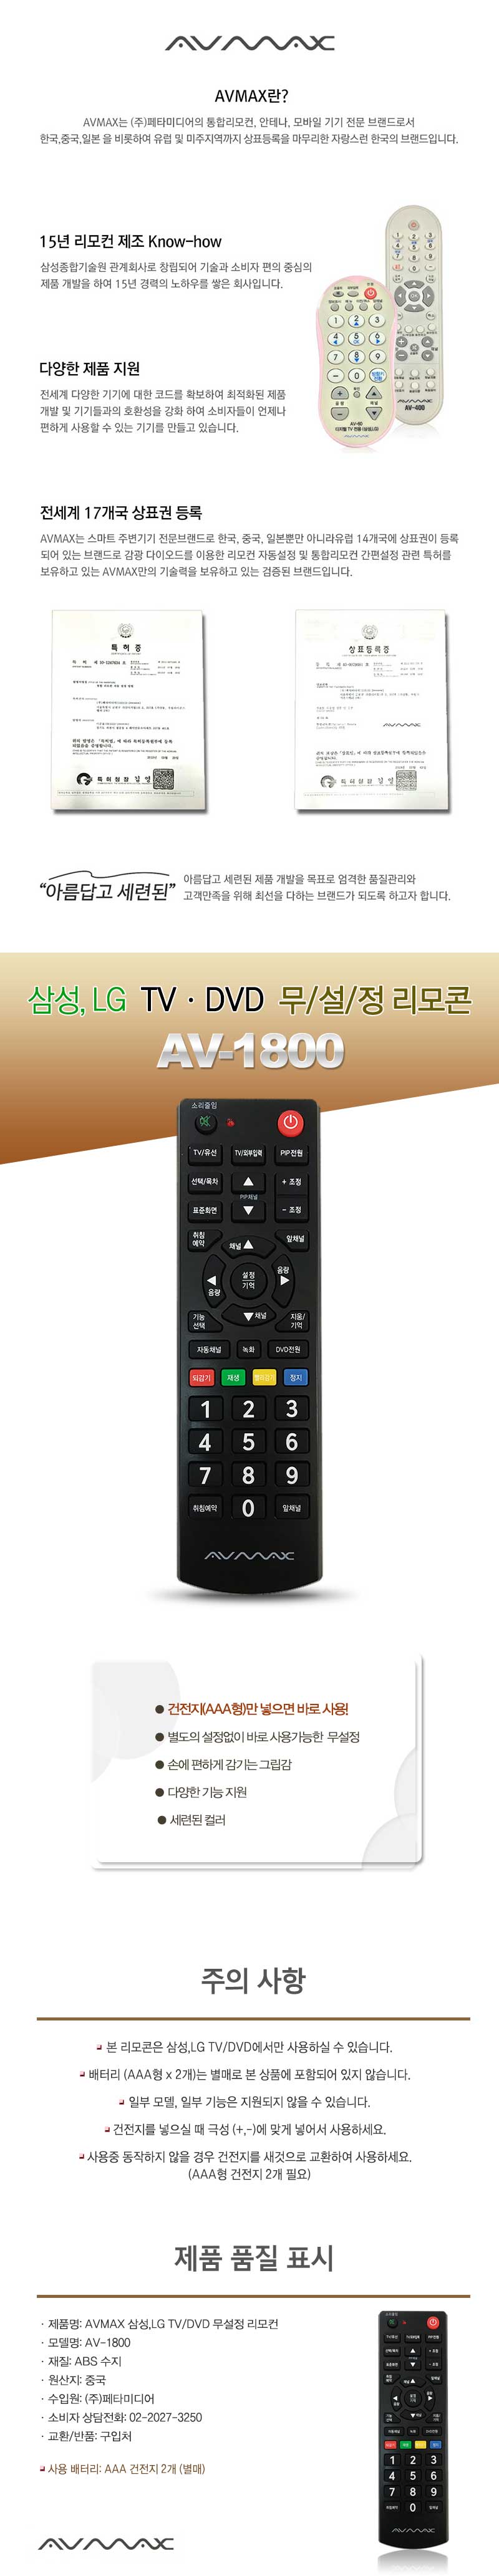 AV-1800.jpg